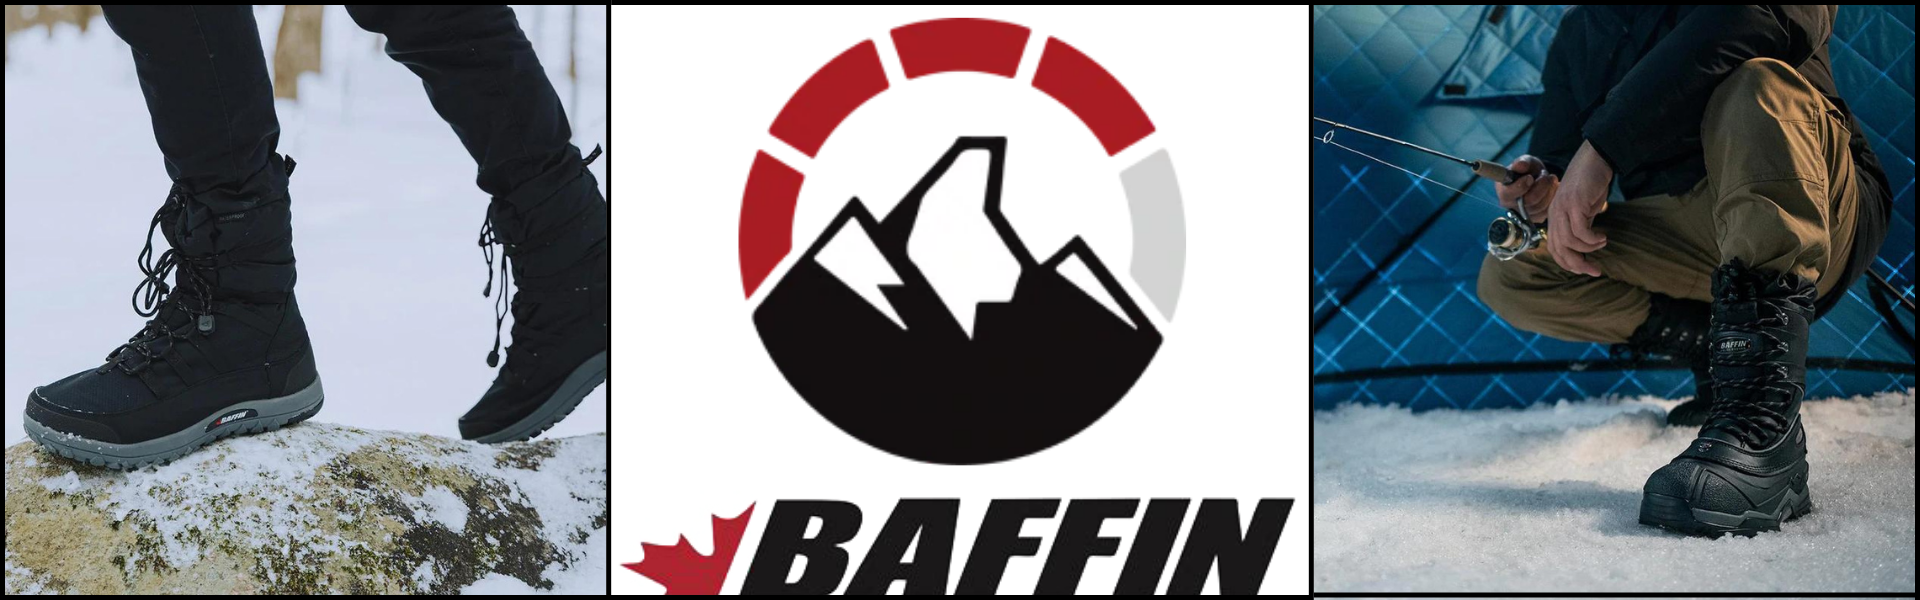 Baffin banner